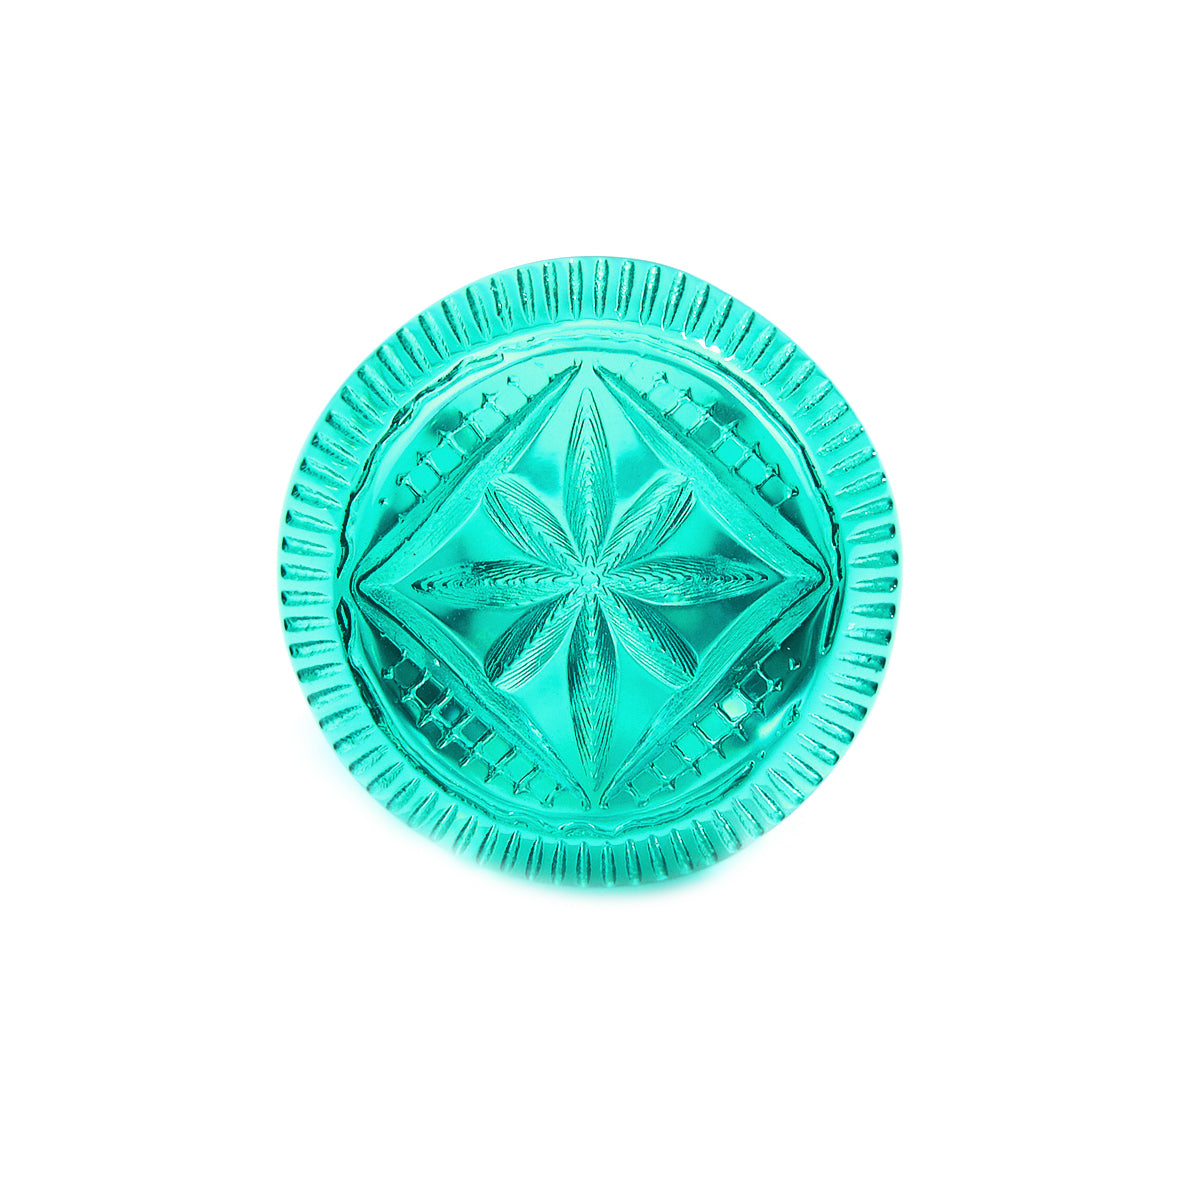 Bottlestop Ring Turquoise